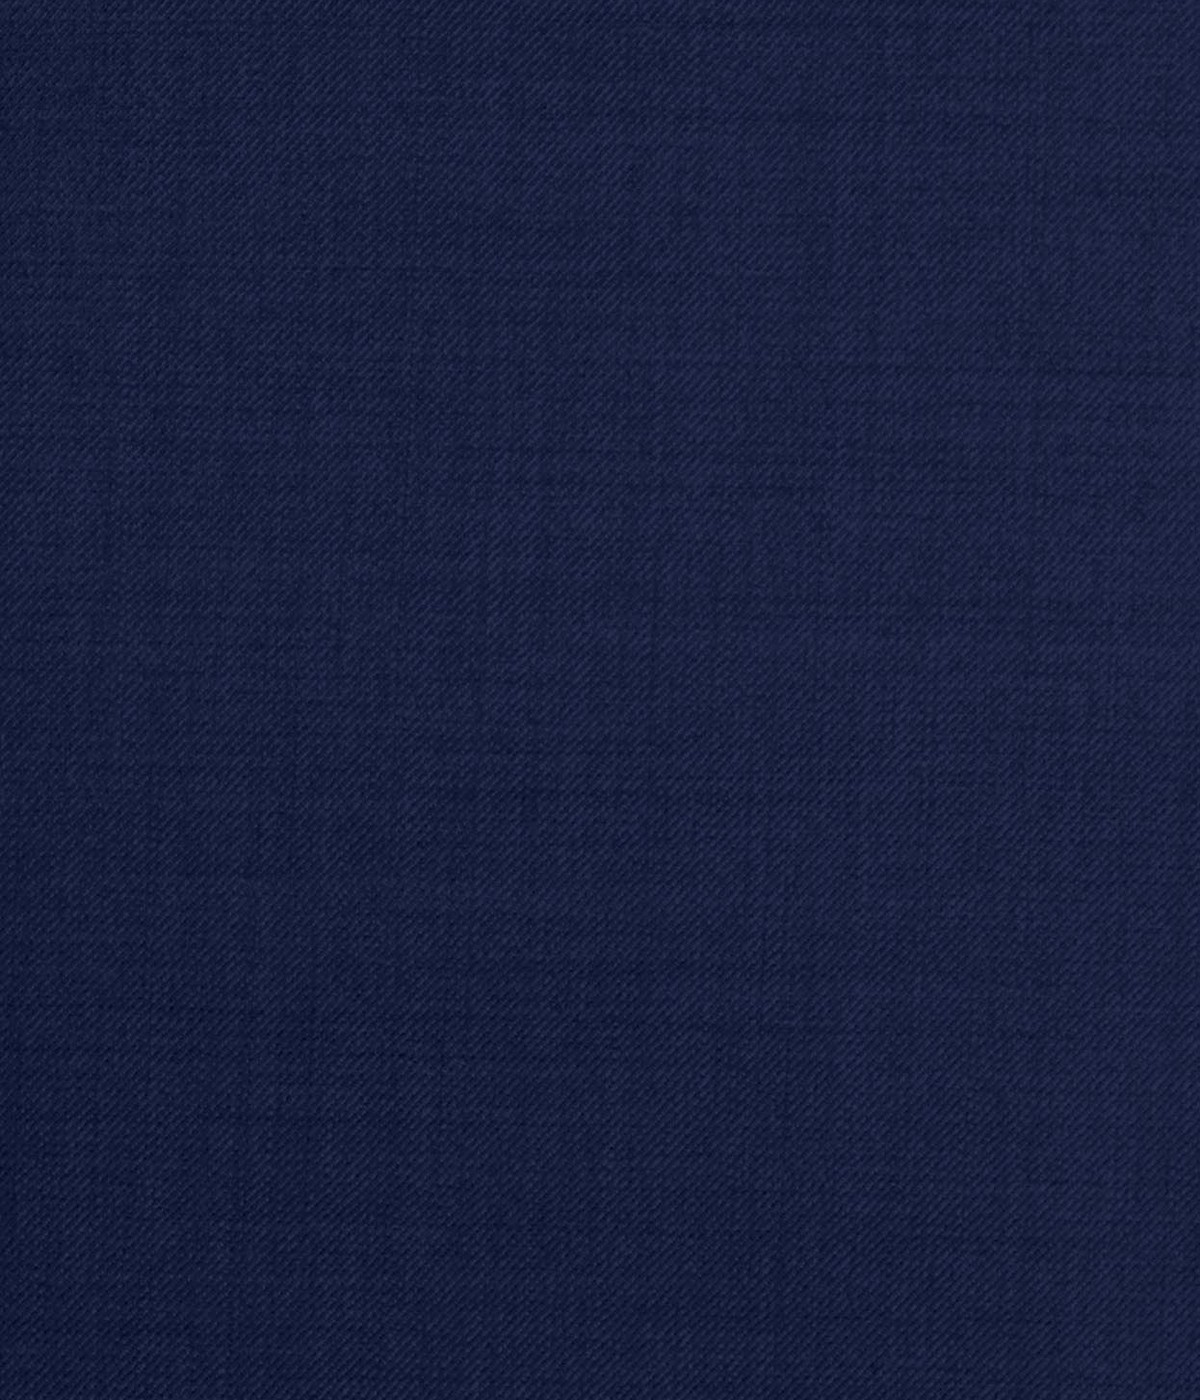 Indigo Blue Jodhpuri Suit- view-3